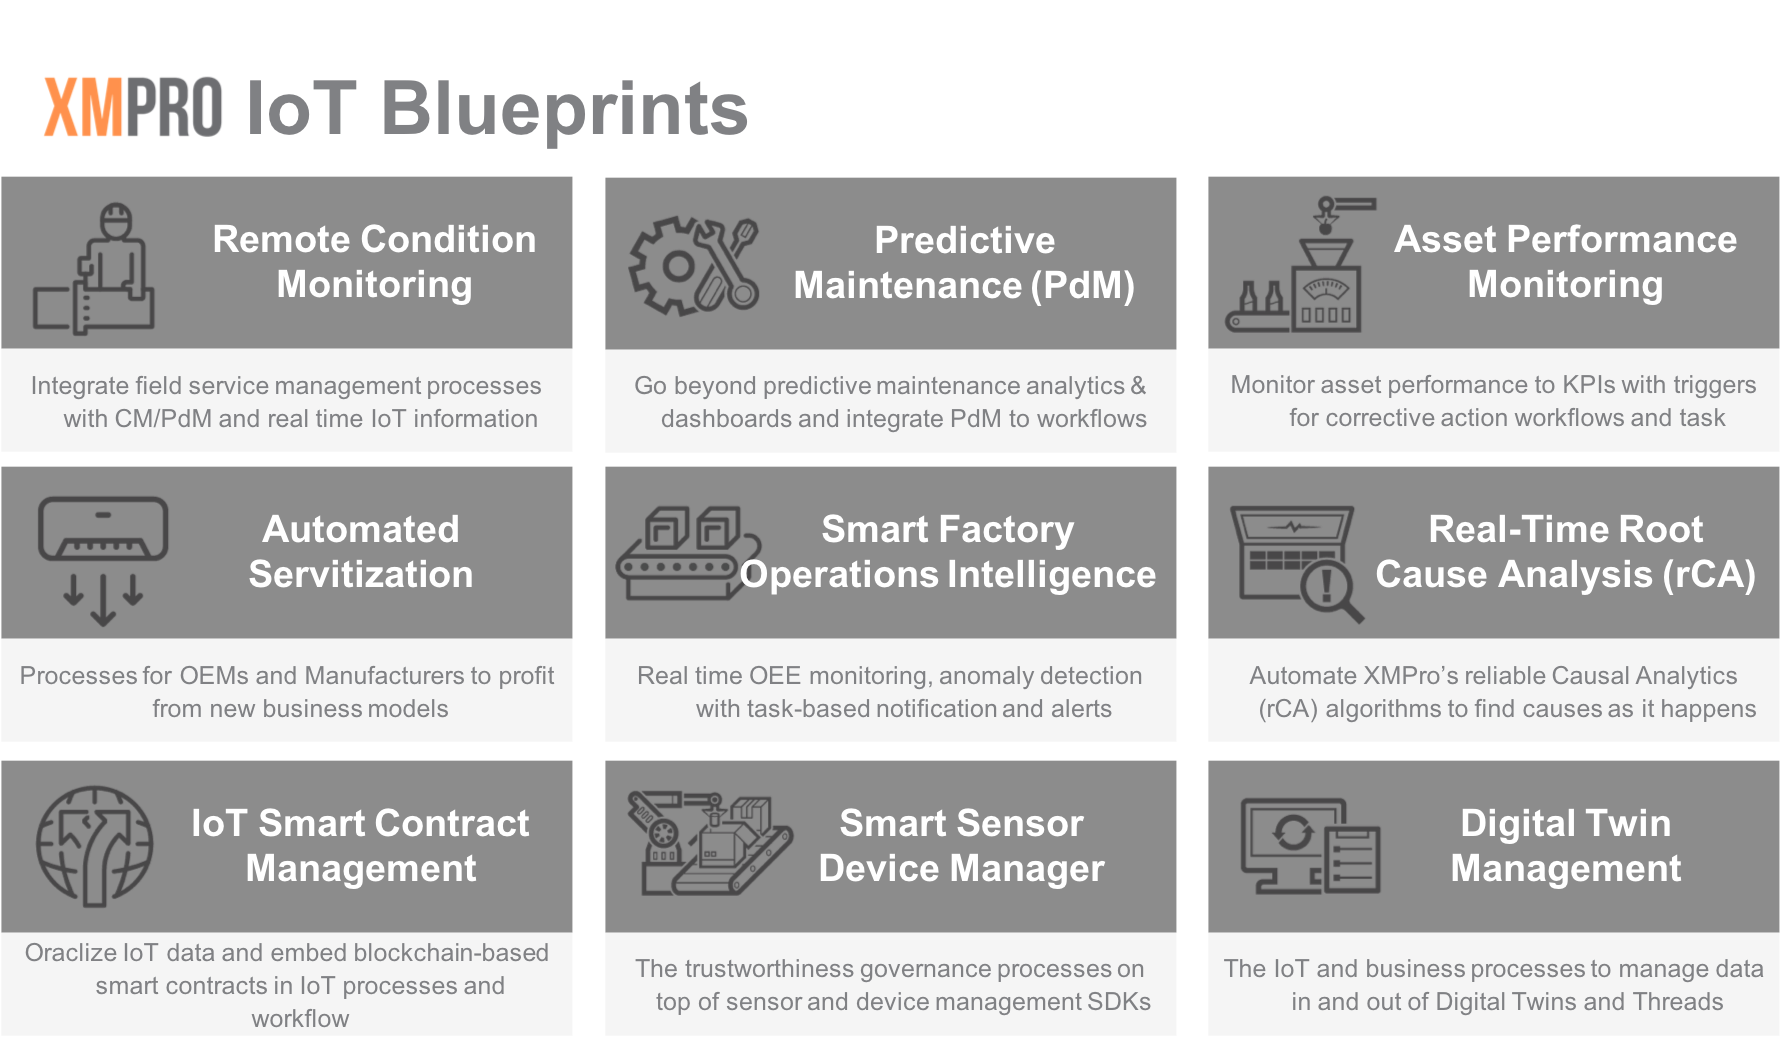 XMPro IoT Blueprints